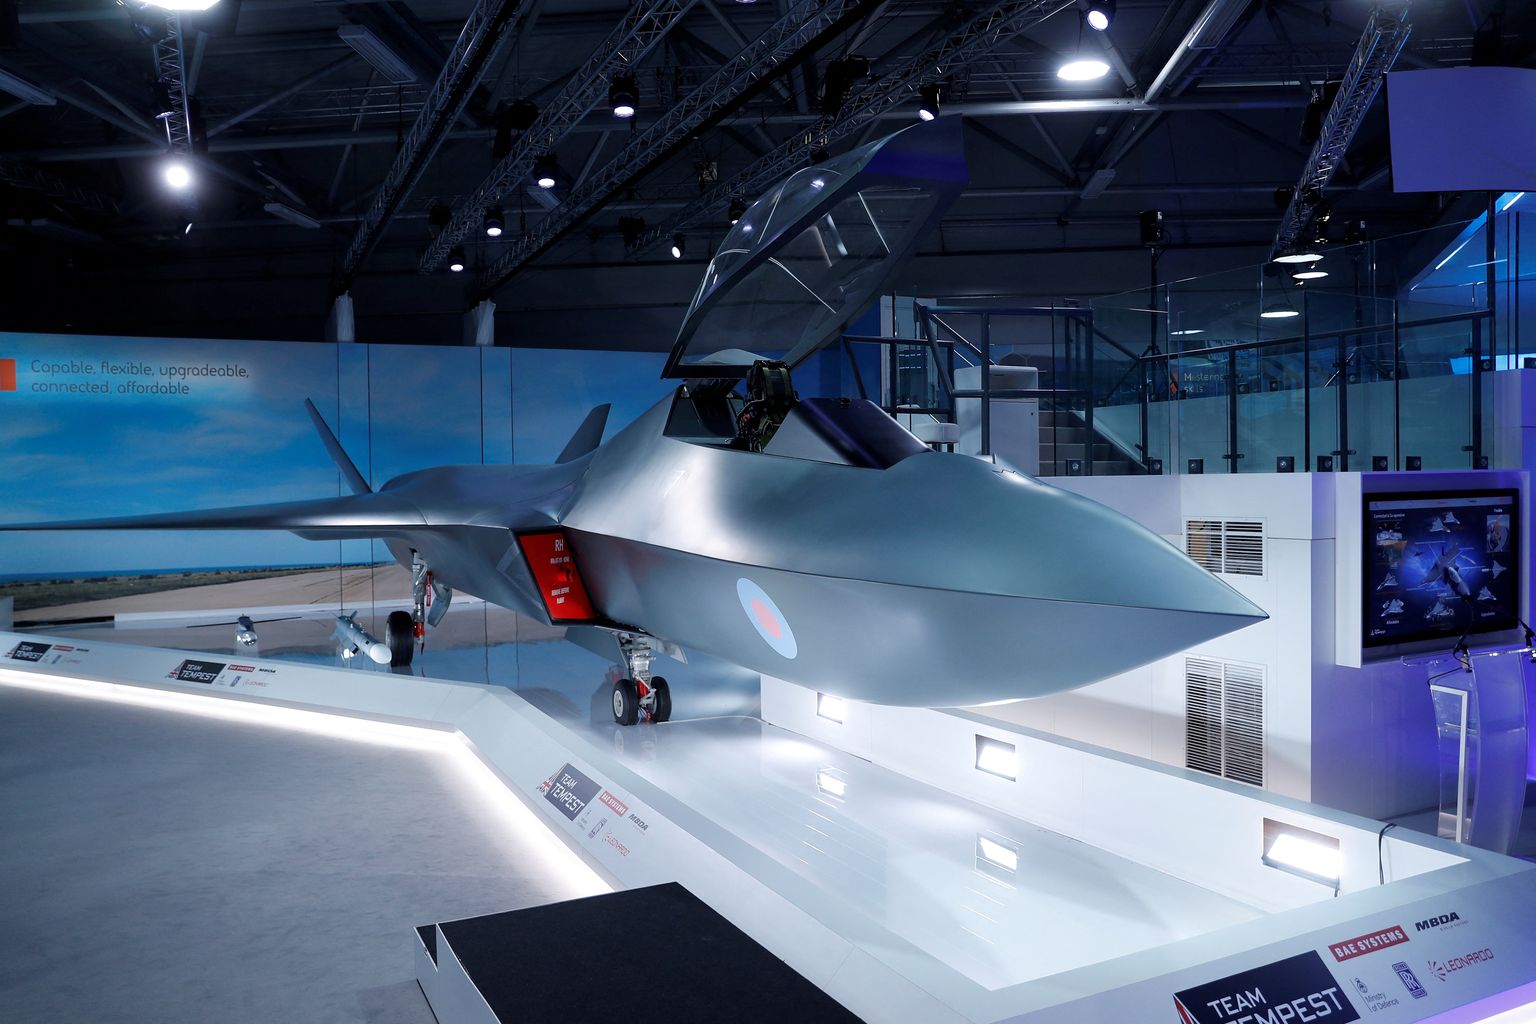 Uue põlvkonna hävituslennuki  mudel Farnborough lennundusnäitusel Ühendkuningriigis, 16. juulil 2018. a.